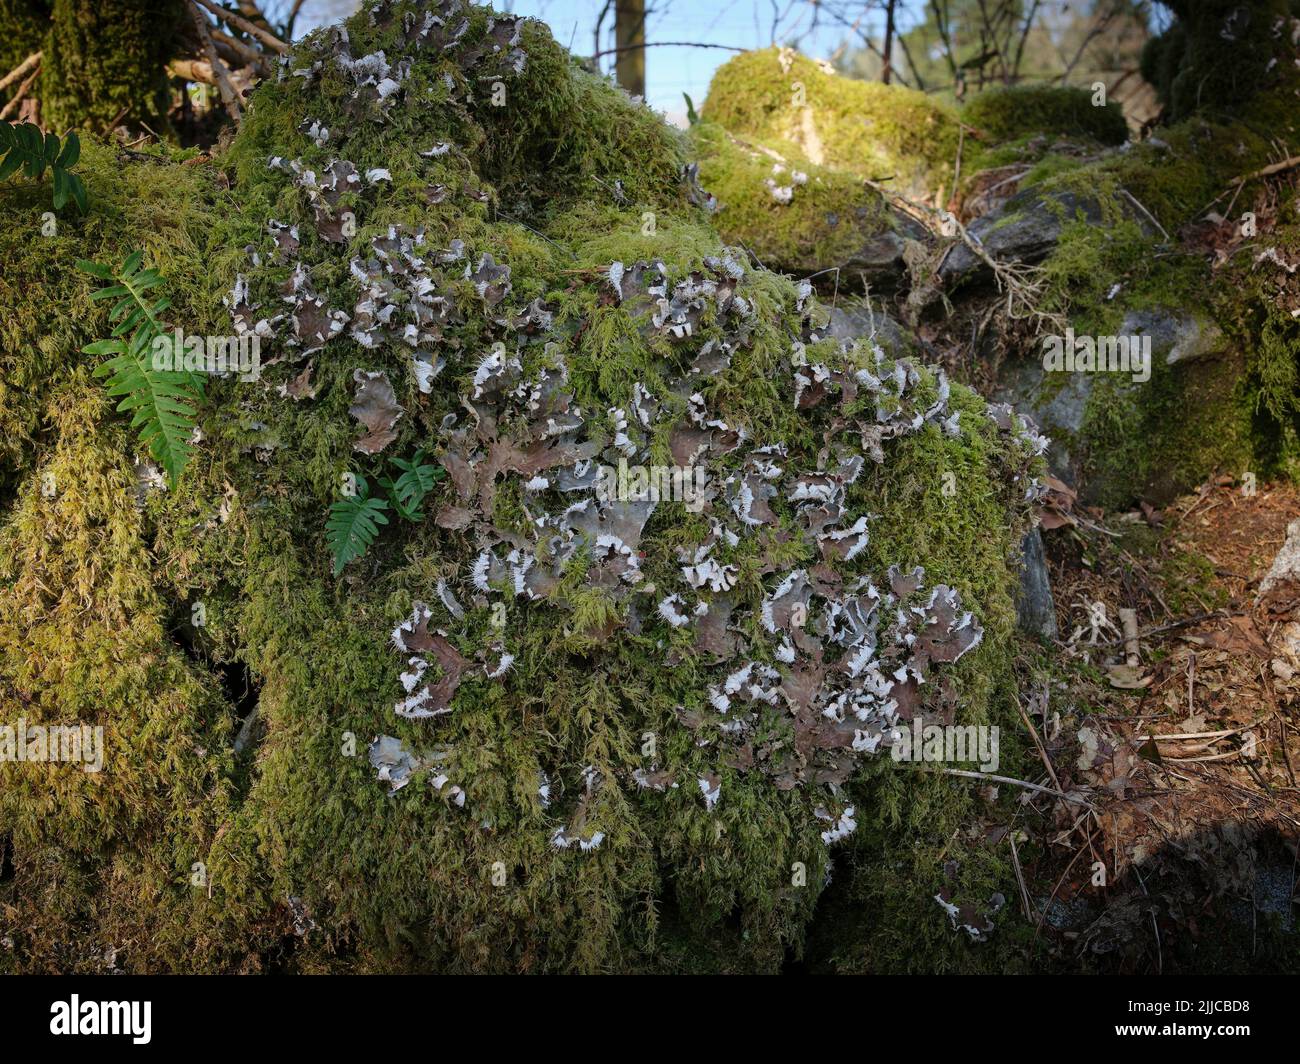 L'ombra del mattino e il sole coglie il dettaglio su quello che probabilmente è il prungwort che cresce su un vecchio tronco di albero sulla costa occidentale della Scozia. Strachur. Arg Foto Stock